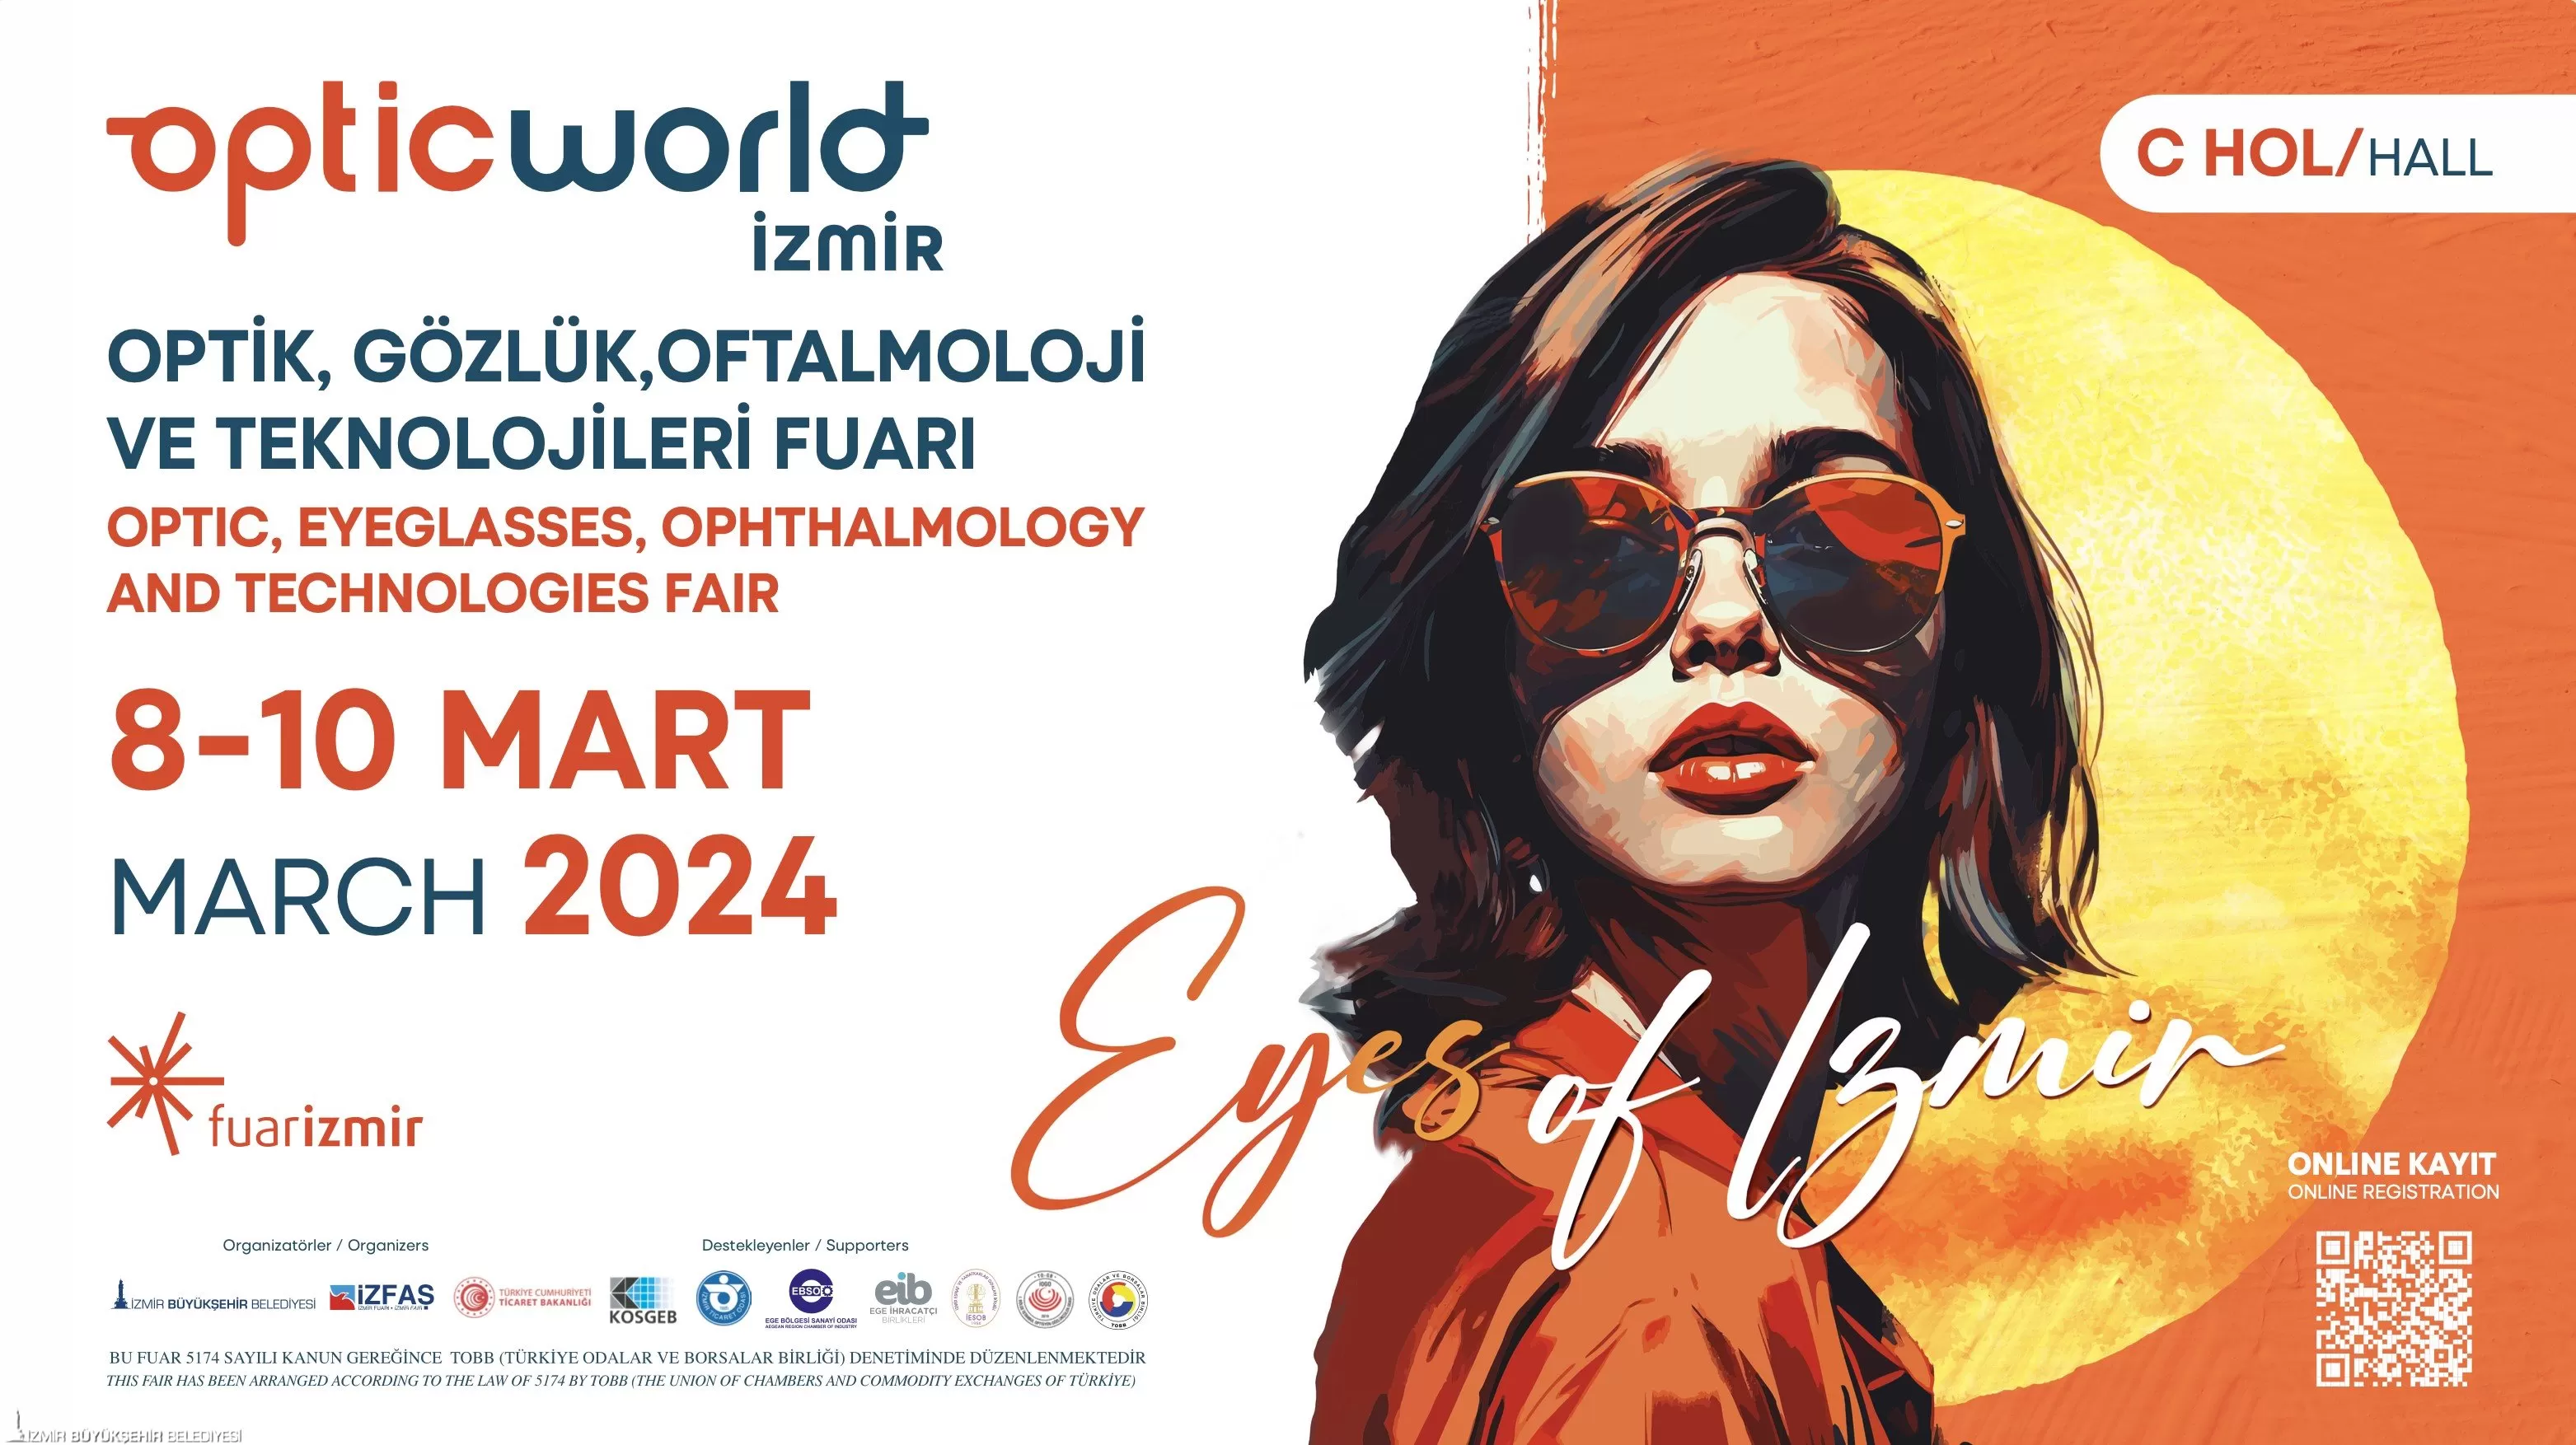 İzmir Büyükşehir Belediyesi'nin fuarlar kenti yapma hedefi doğrultusunda ilk kez düzenlenecek OPTIC World İzmir Fuarı, 8-10 Mart tarihleri arasında Fuar İzmir'de optik sektörünü buluşturacak.